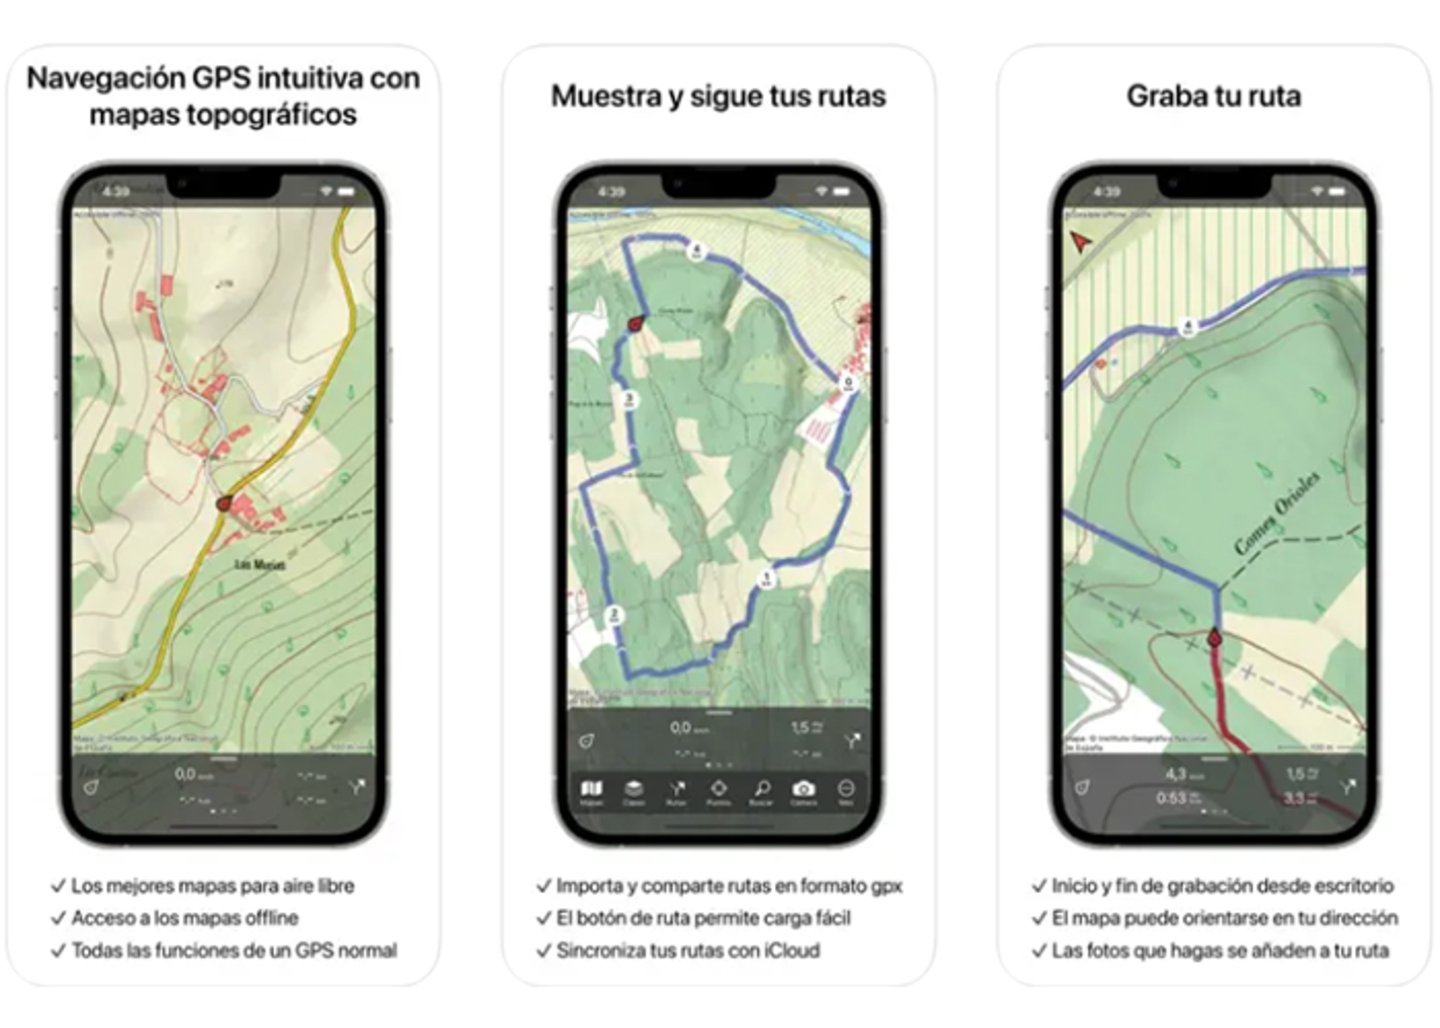 Topo GPS - navegacion precisa para exploradores modernos